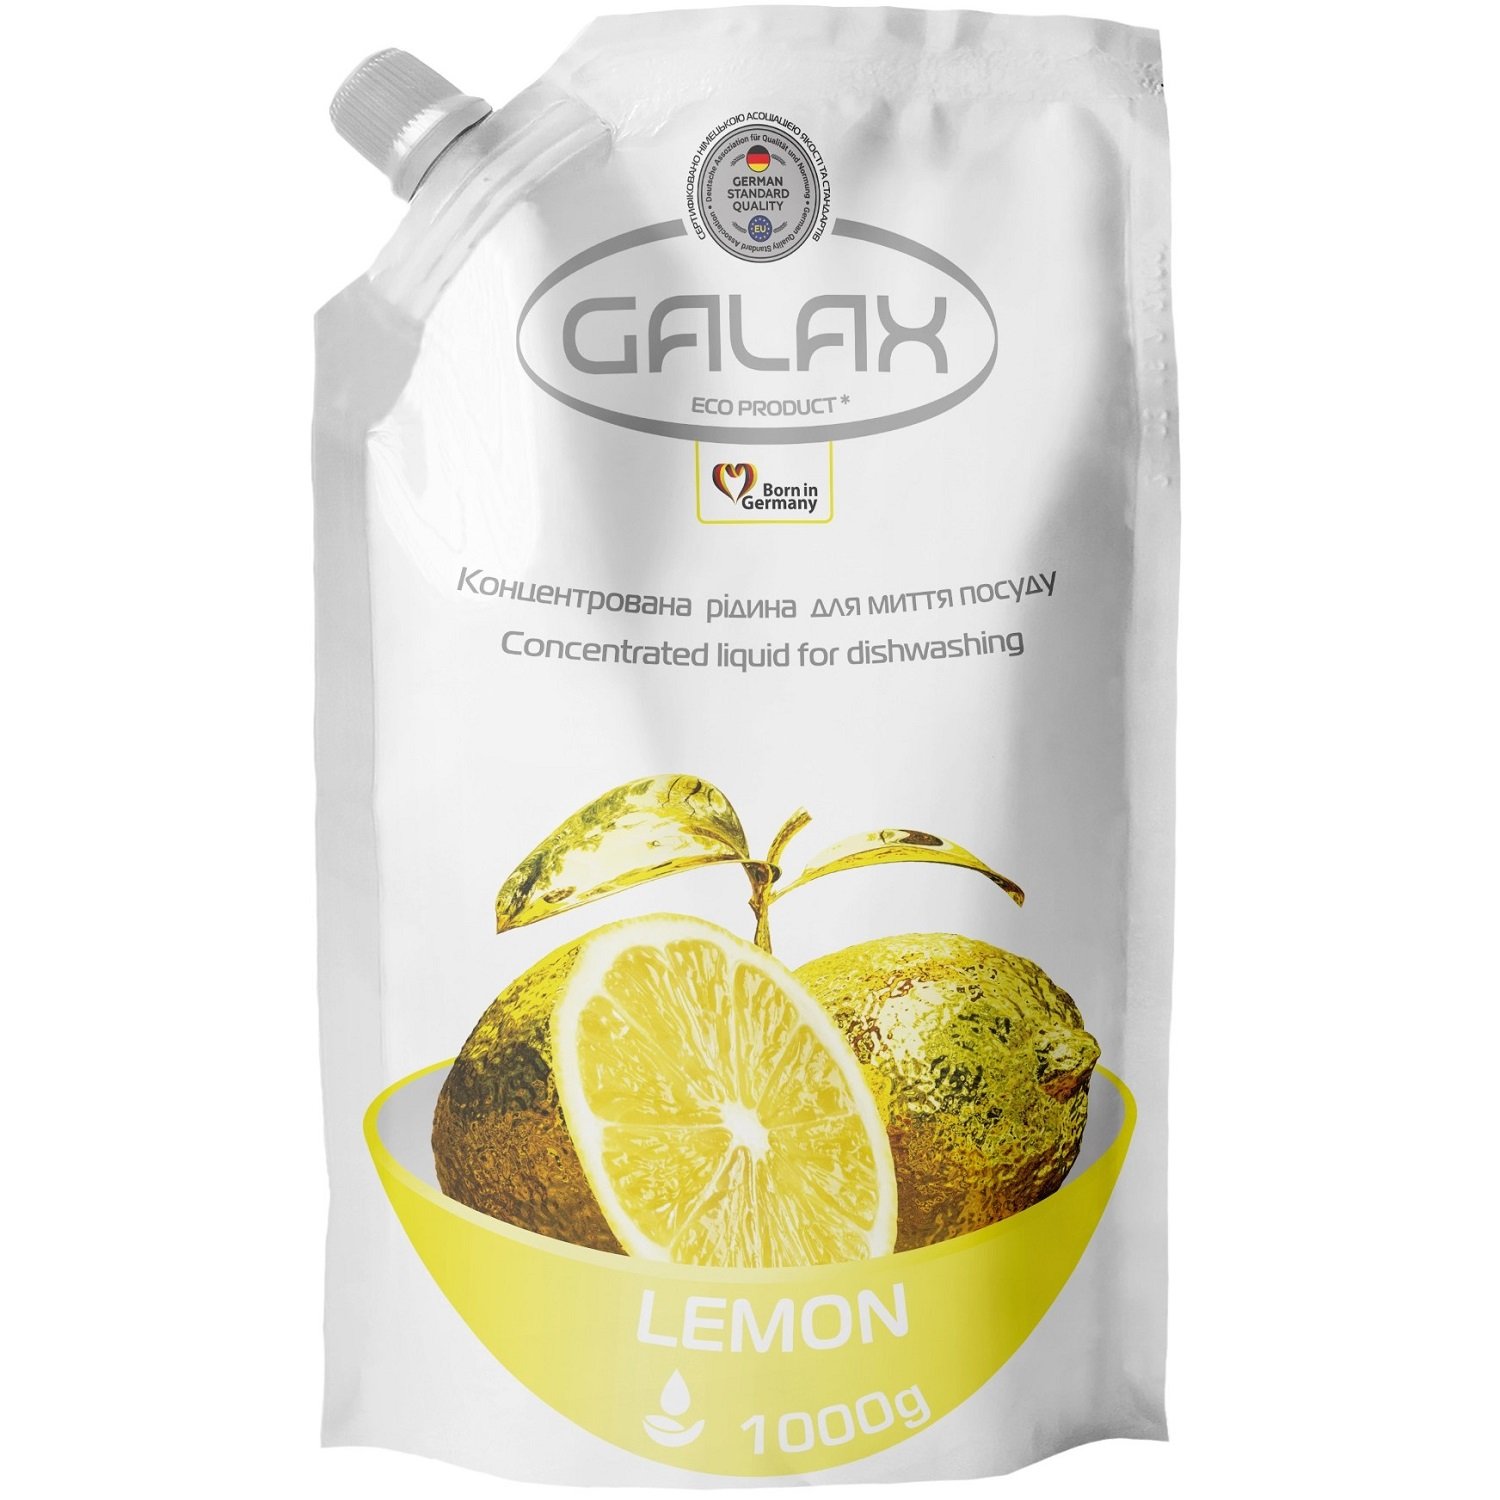 Рідина для миття посуду Galax, лимон, 1000 г - фото 1